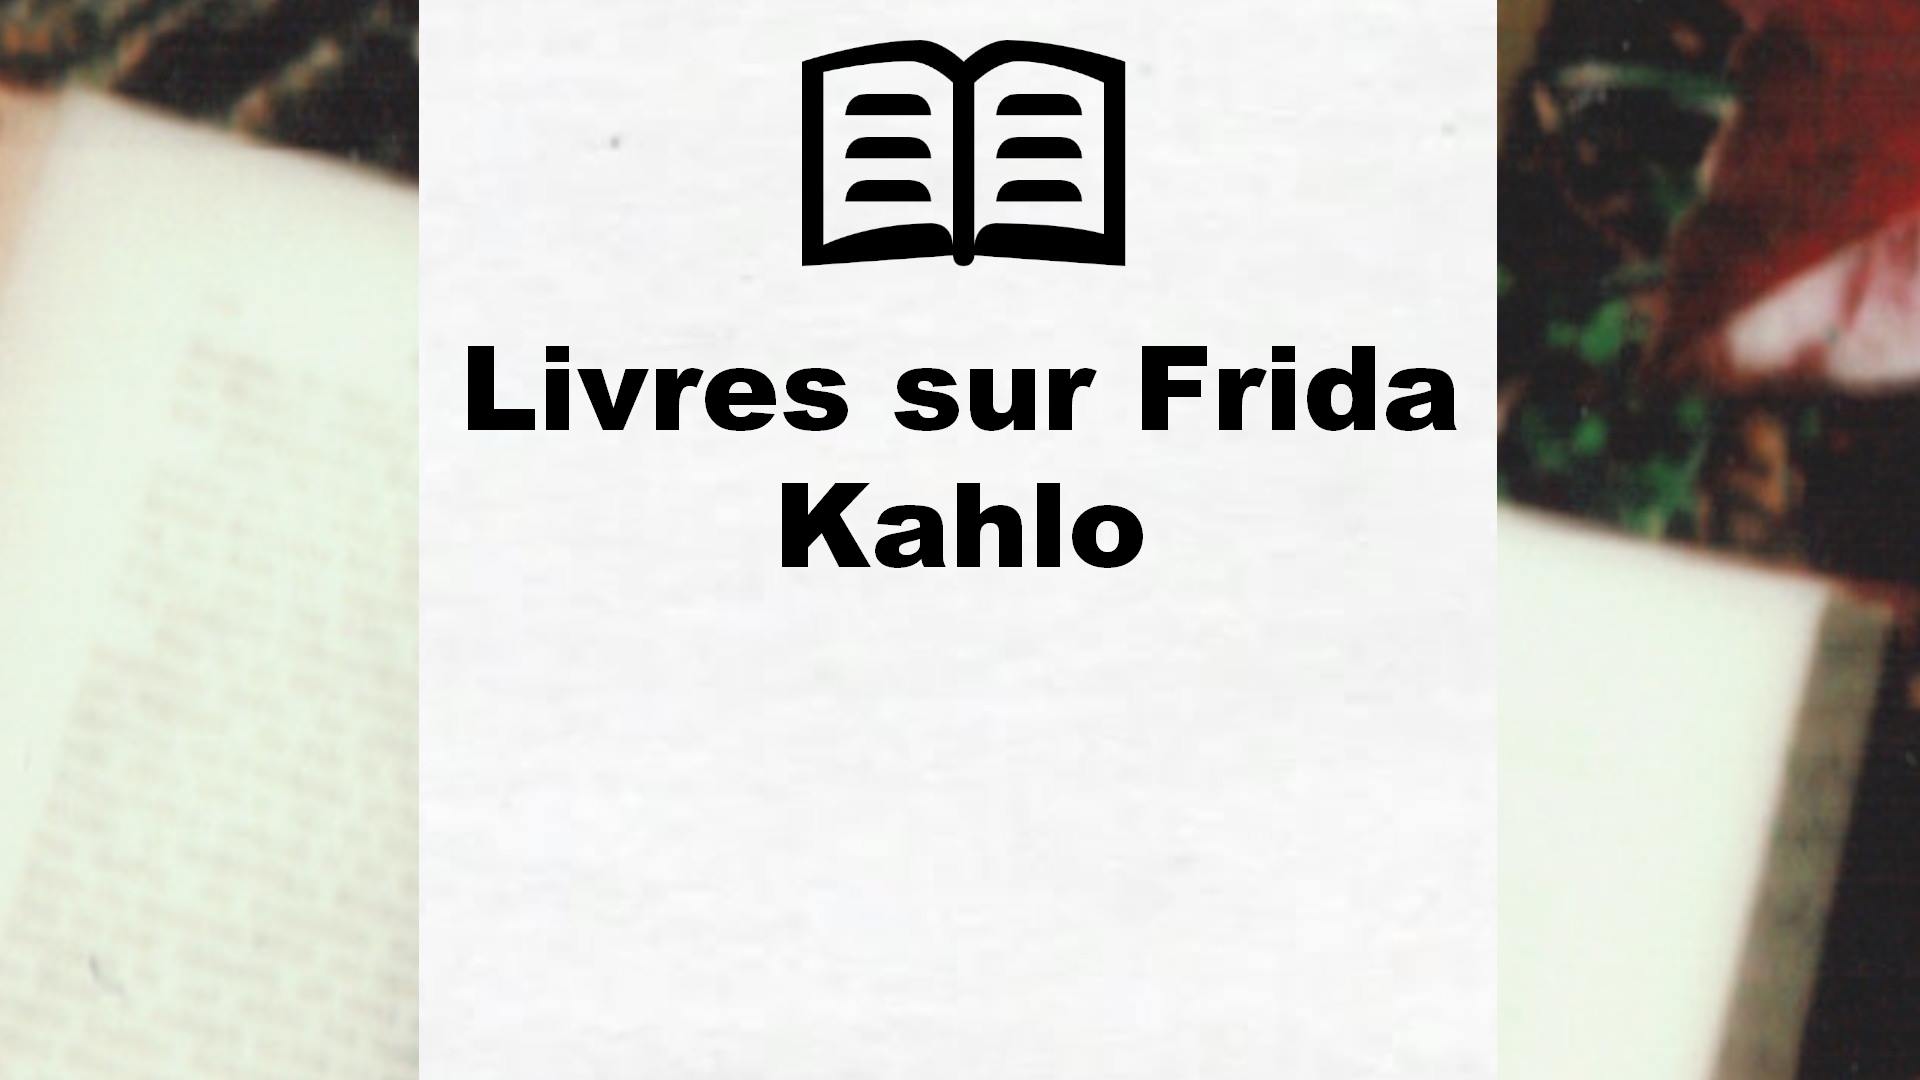 Livres sur Frida Kahlo